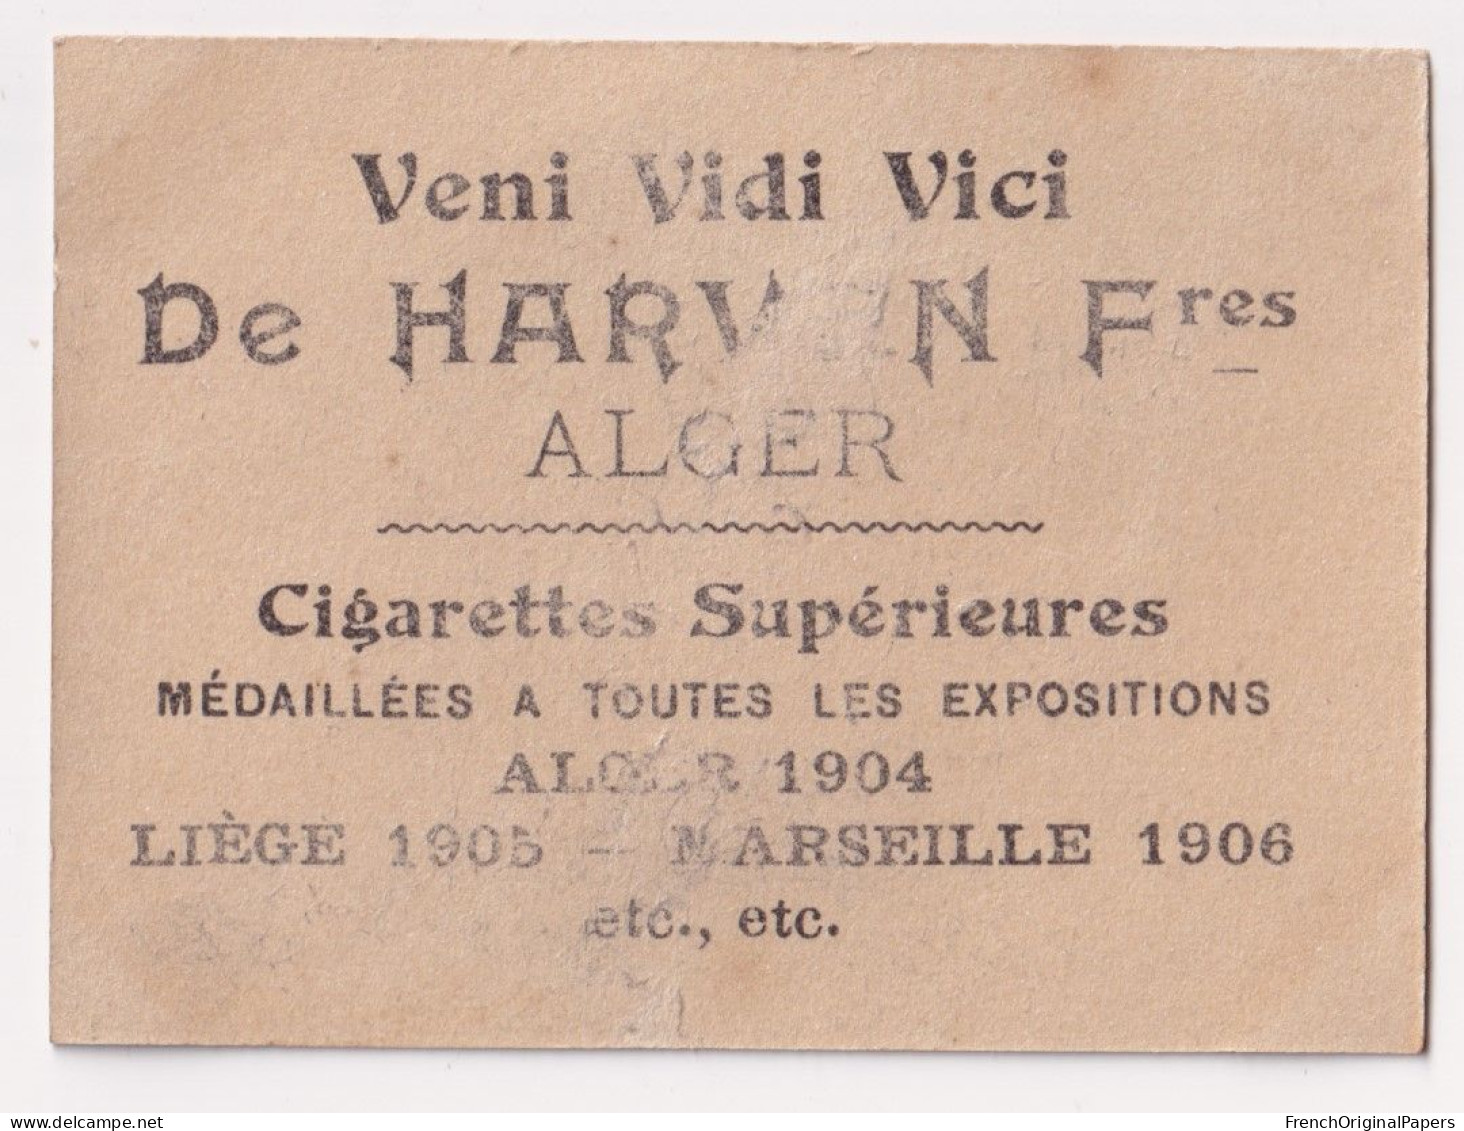 Fleuros - Cigarettes De Harven 1910 Photo Femme Sexy Lady Pin-up Woman Nue Nude Nu Seins Nus Vintage Alger A62-9 - Autres Marques